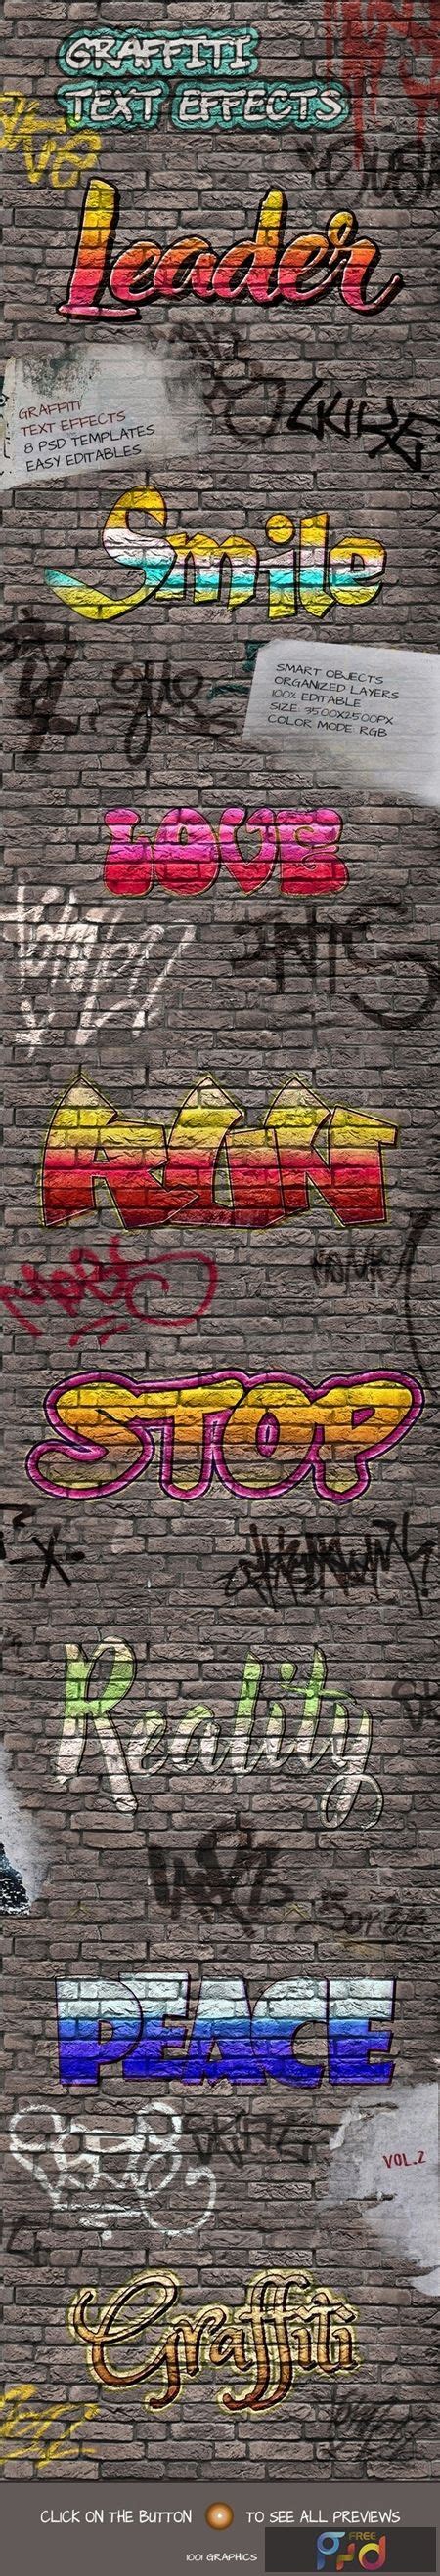 8 Graffiti Text Effects 8 Psd Templates Vol2 25033075 Freepsdvn